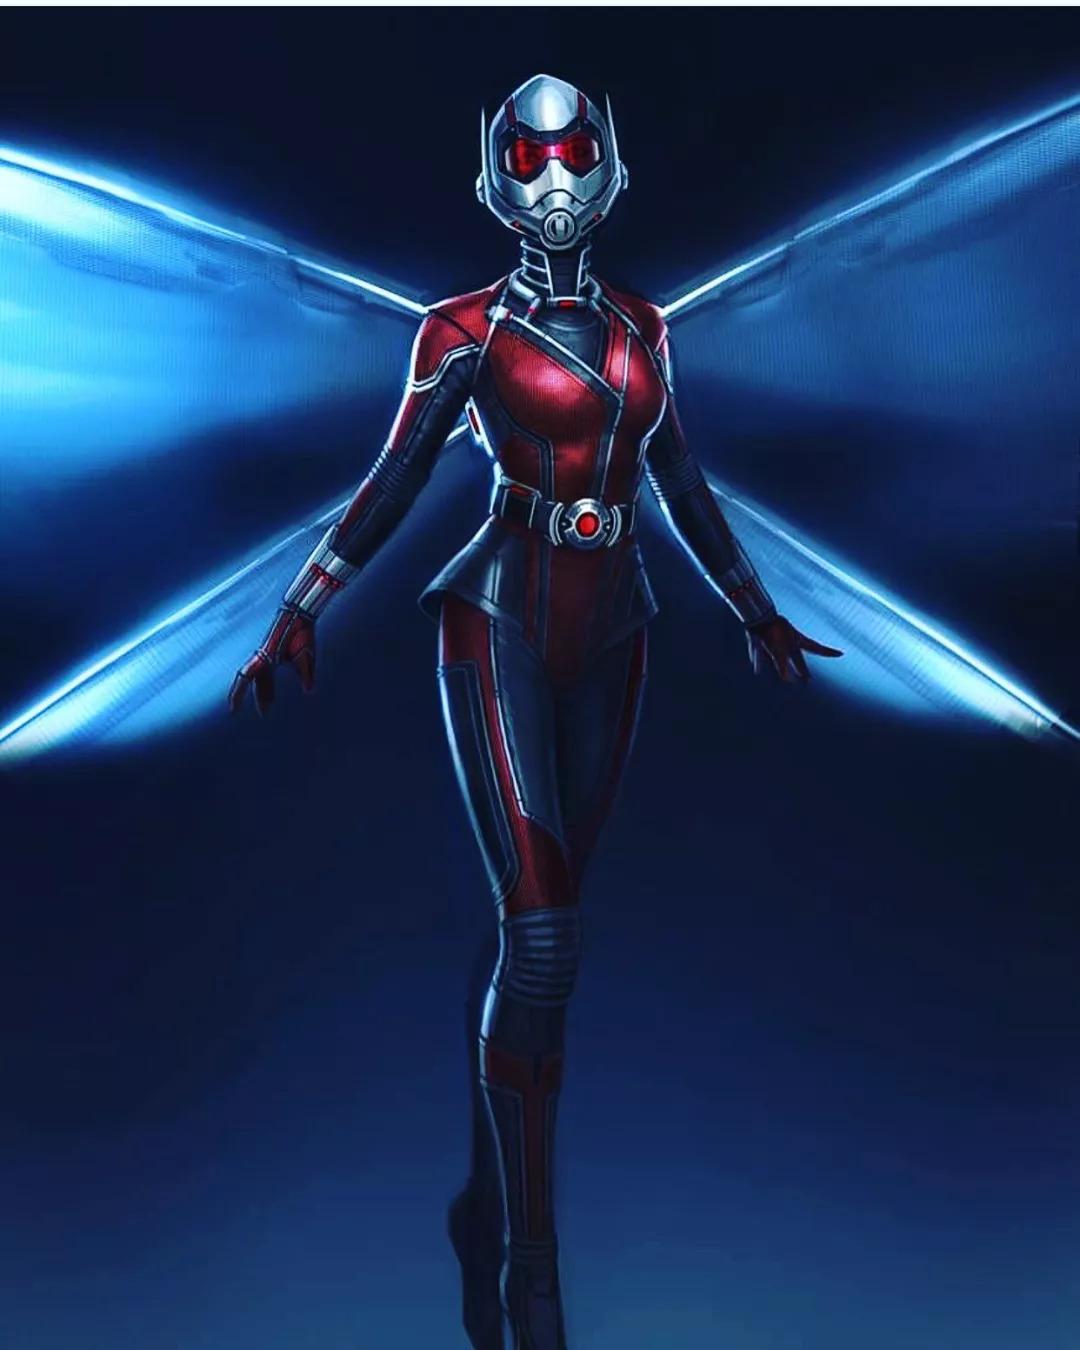 漫威最厉害的女英雄之一,《蚁人2》超酷概念设计